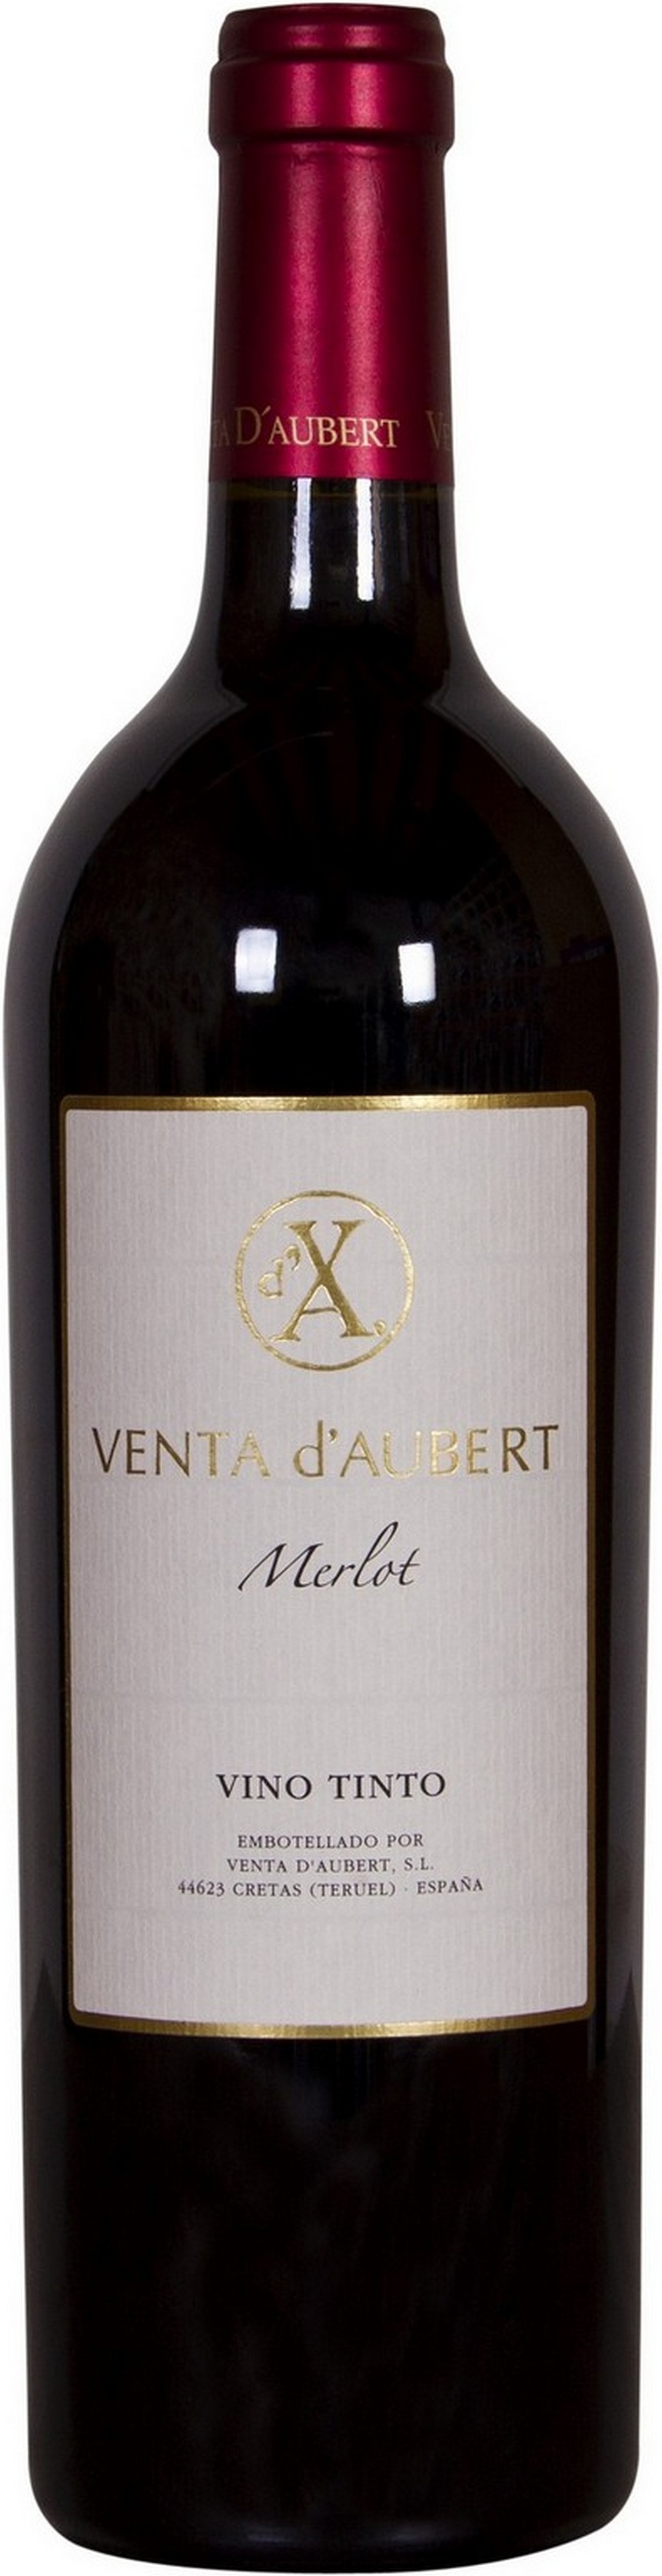 venta-daubert-merlot-bio-2014